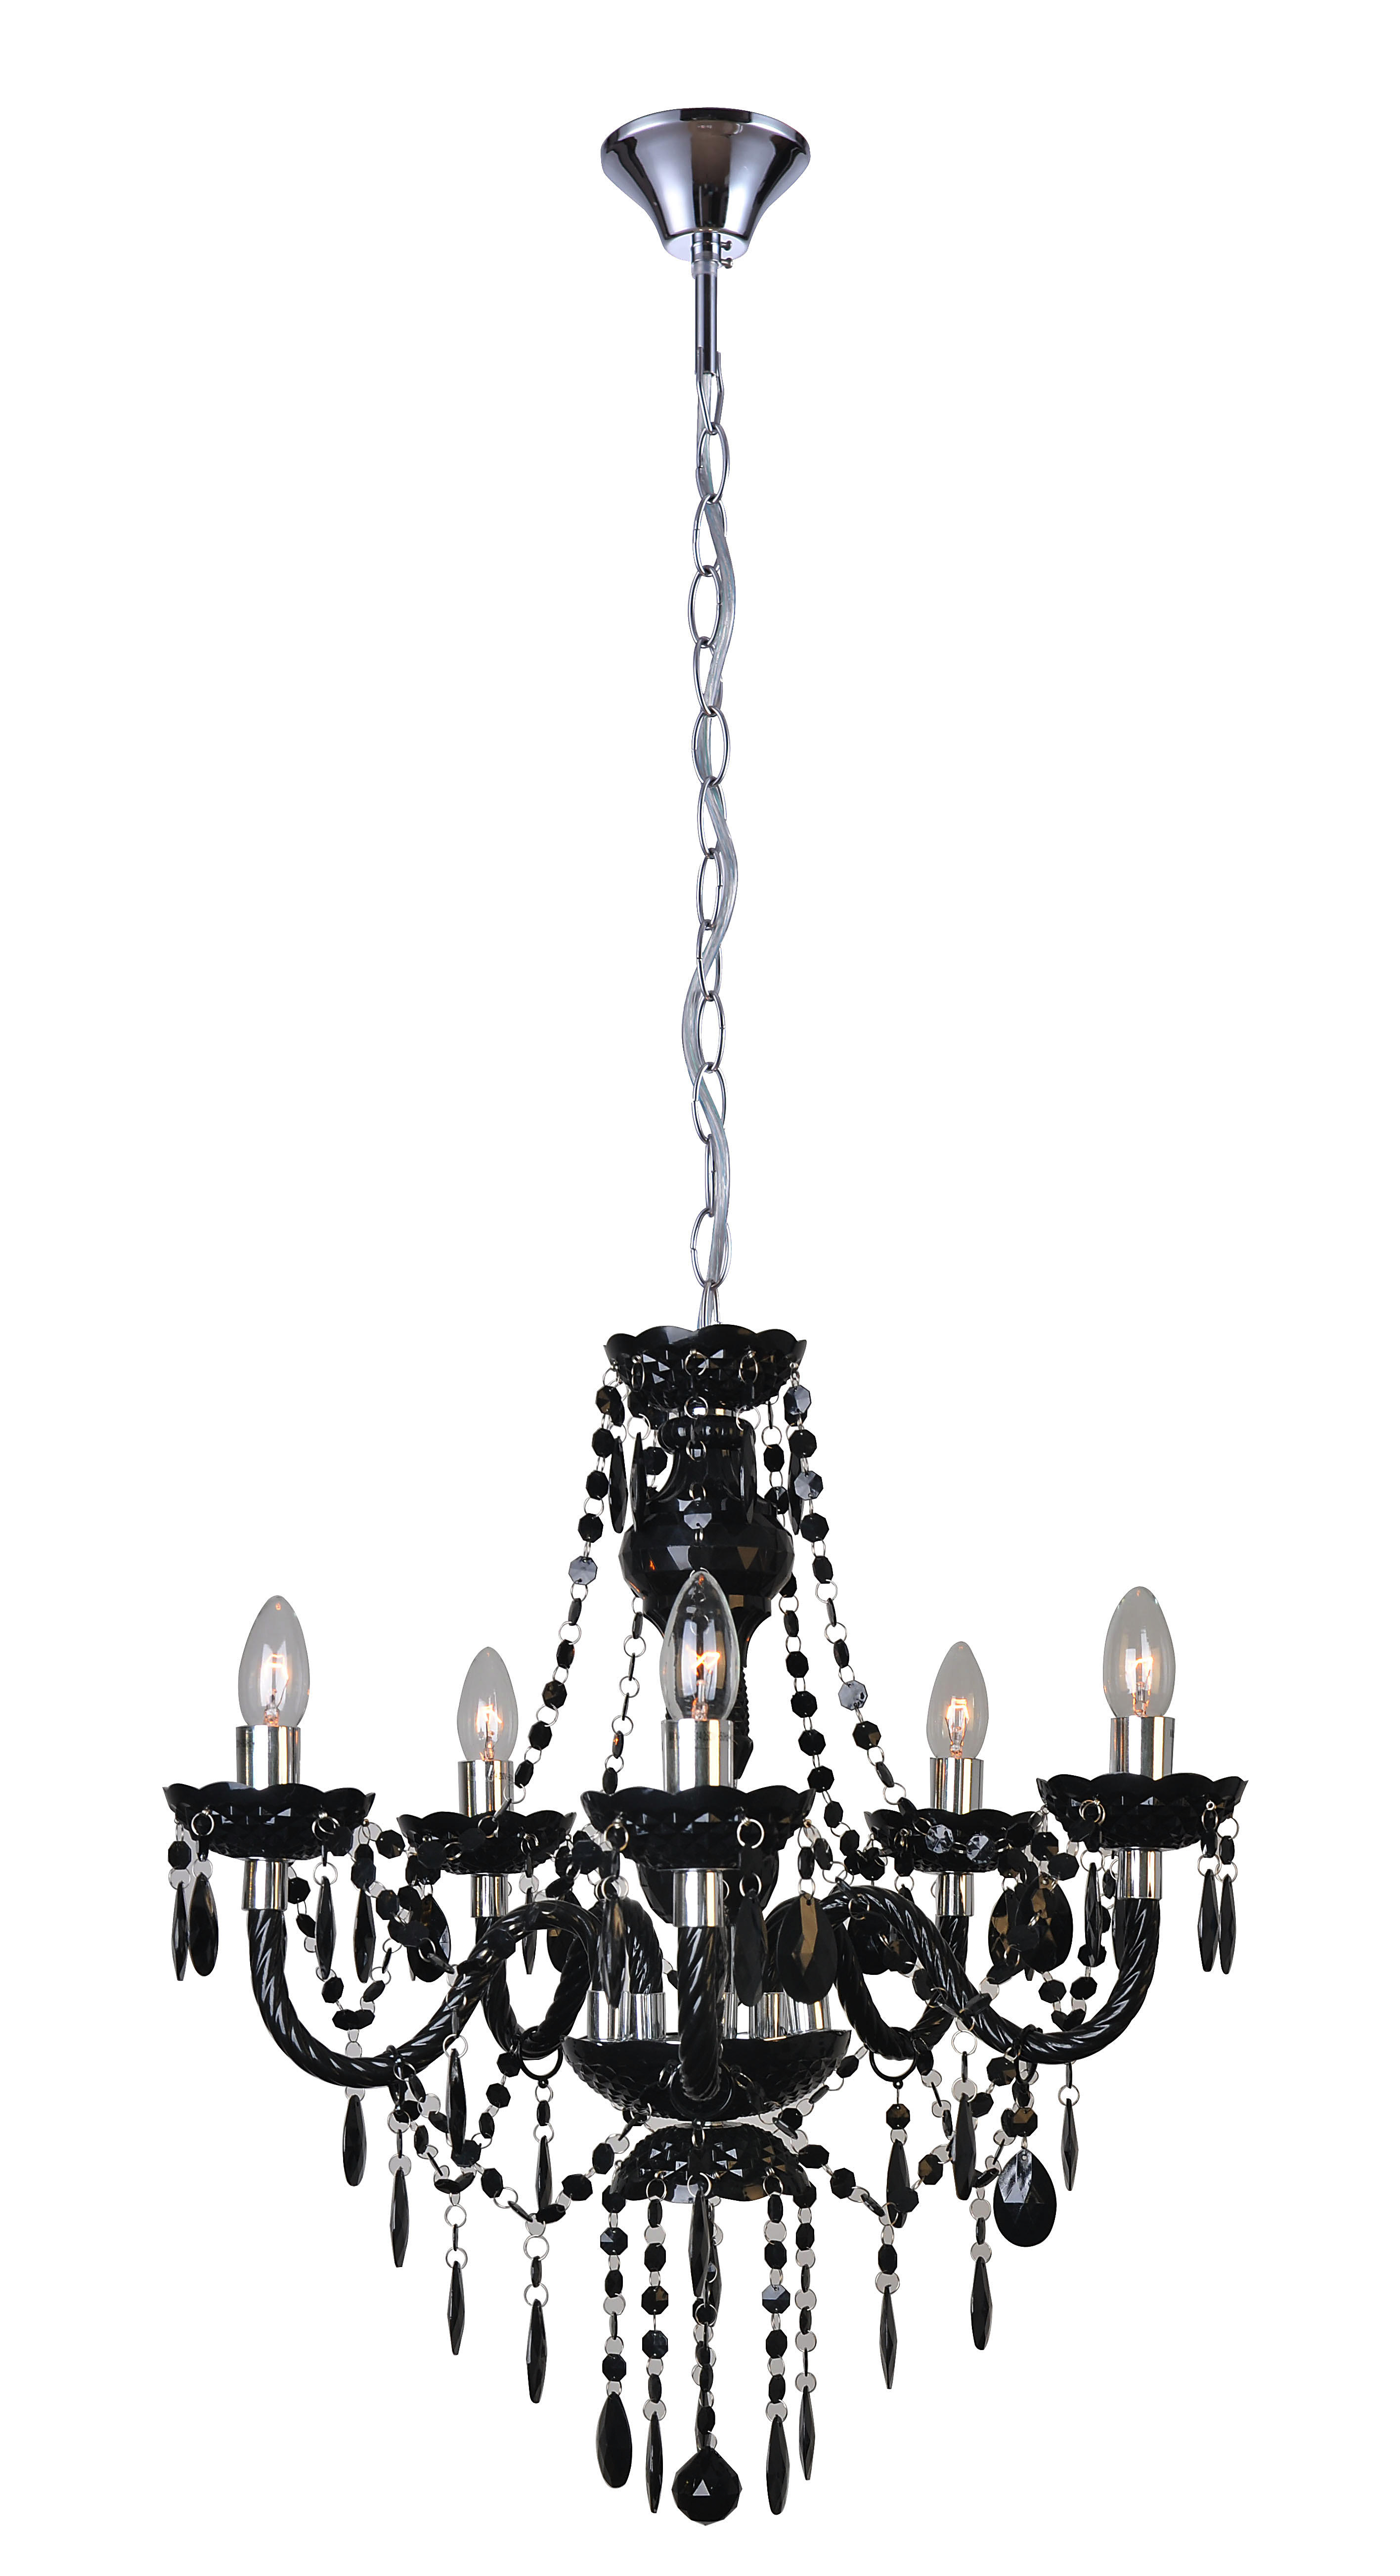 Hölscher Leuchten Kronleuchter 41825 schwarz Kunststoff D: ca. 55 cm E14 5 Brennstellen Kronleuchte schwarz 55cm - schwarz (55,00cm)